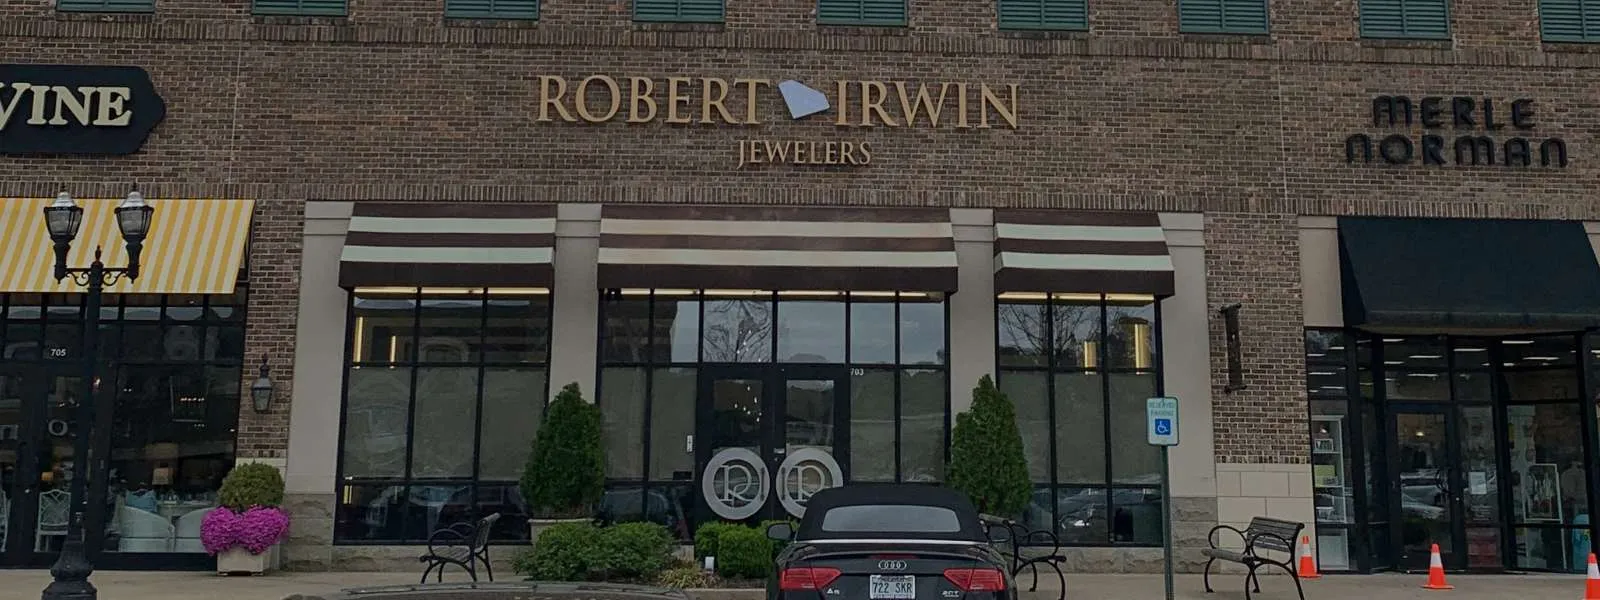 Robert Irwin Jewelers - 11525 Cantrell Rd. Ste 703 Little Rock, AR 72212